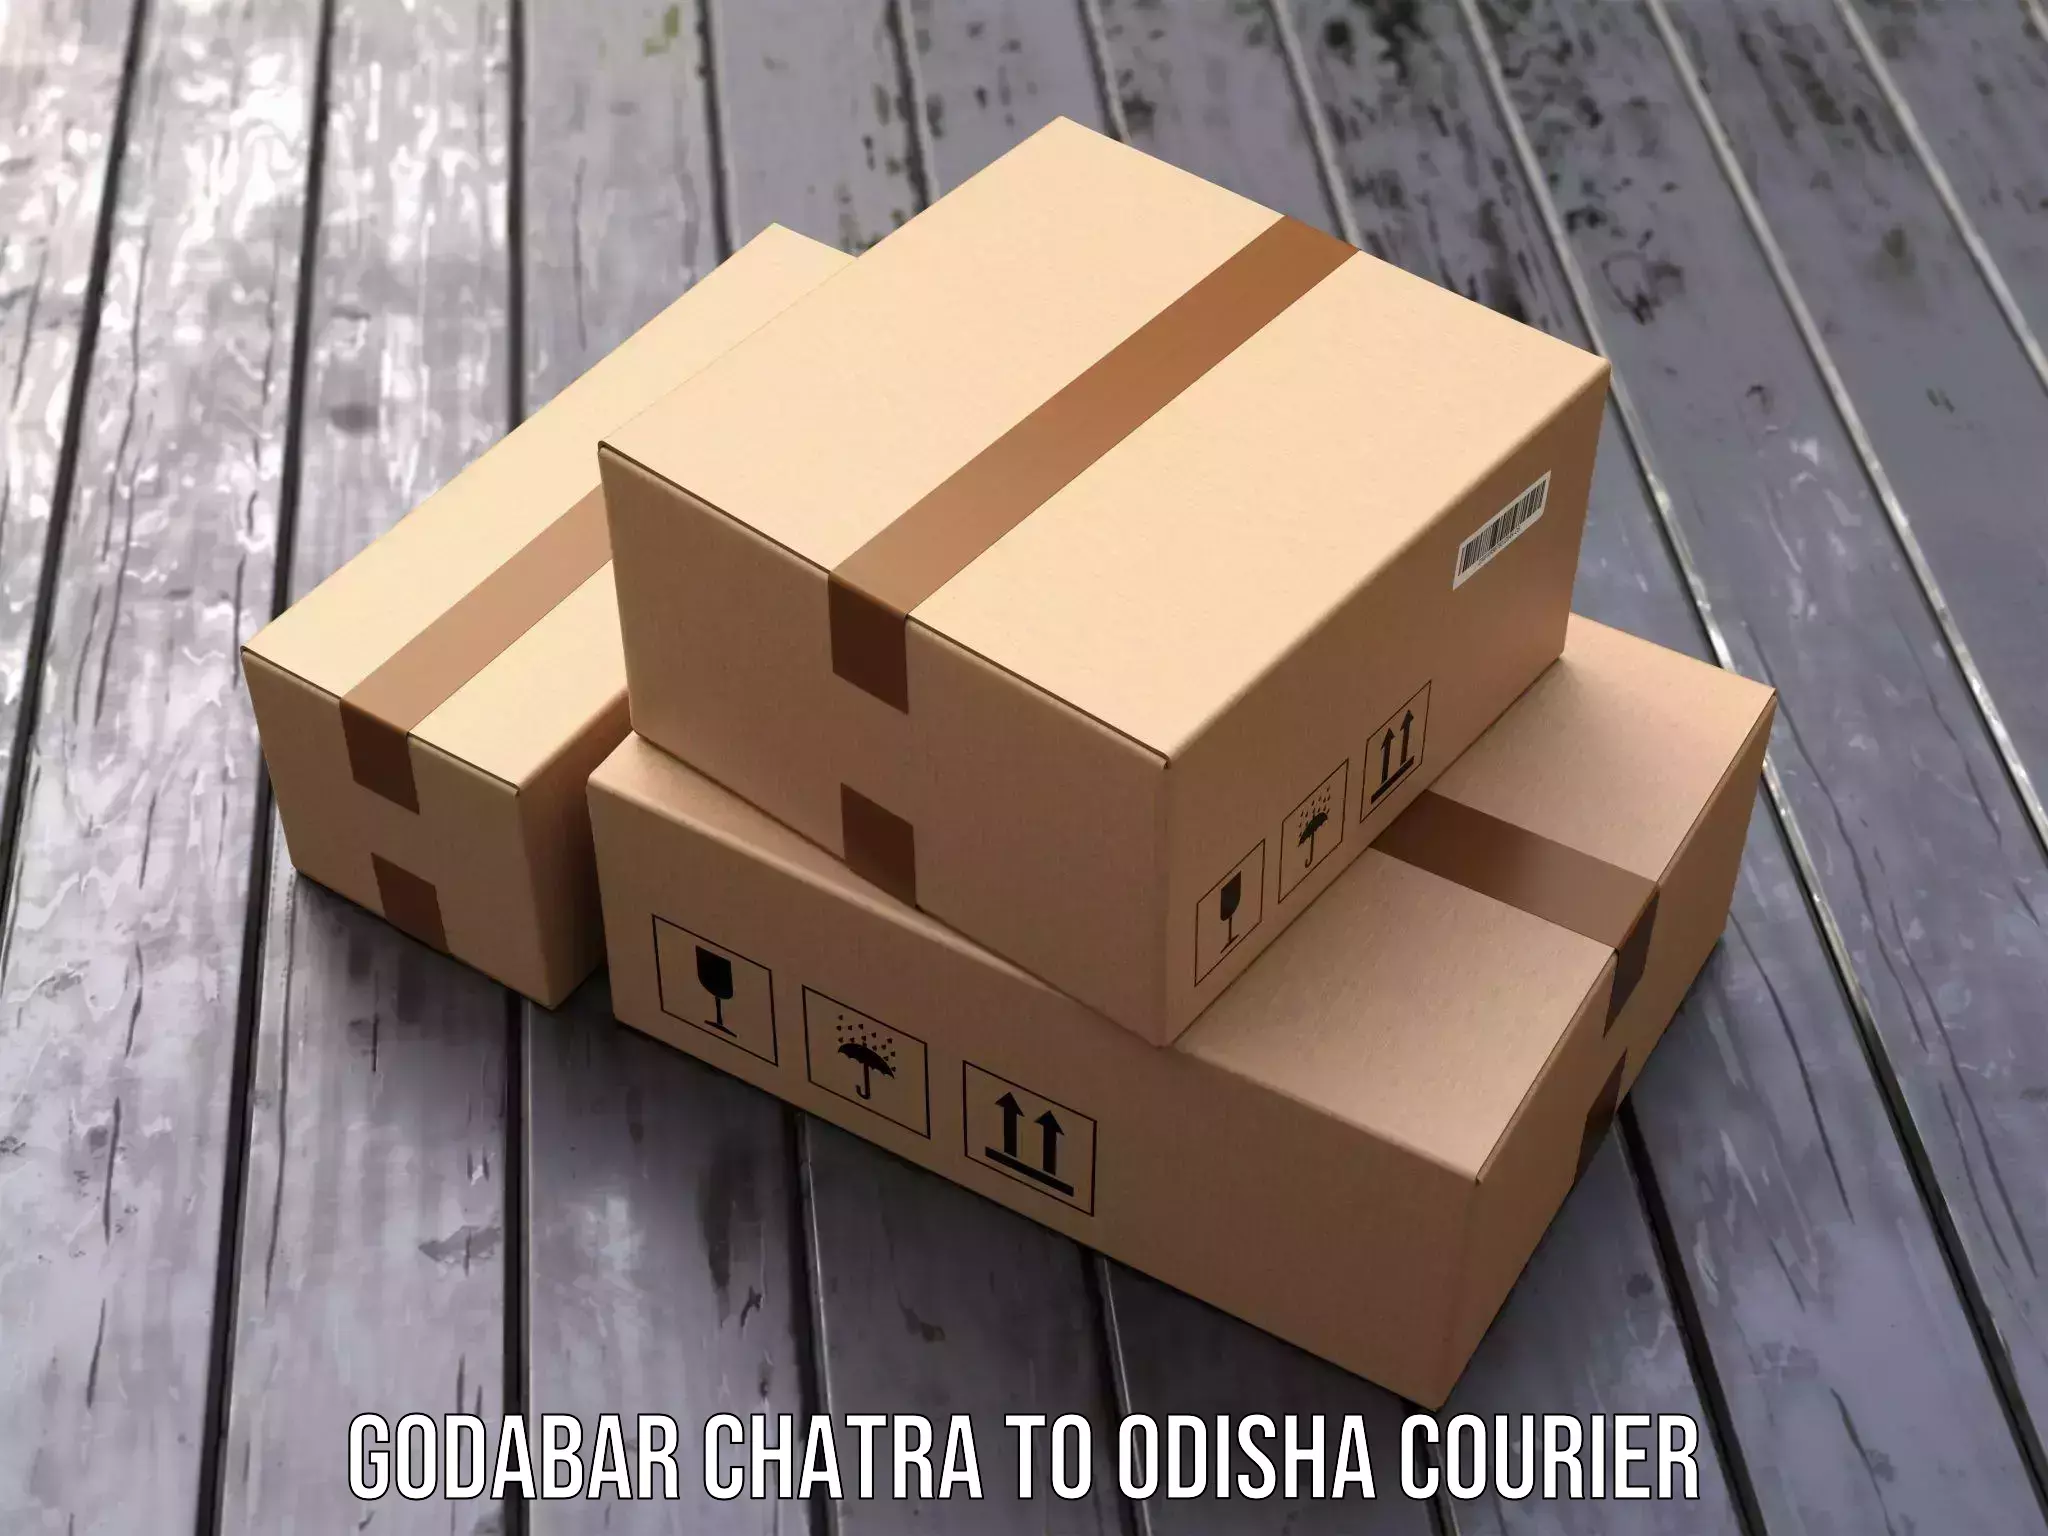 24/7 courier service Godabar Chatra to Odisha